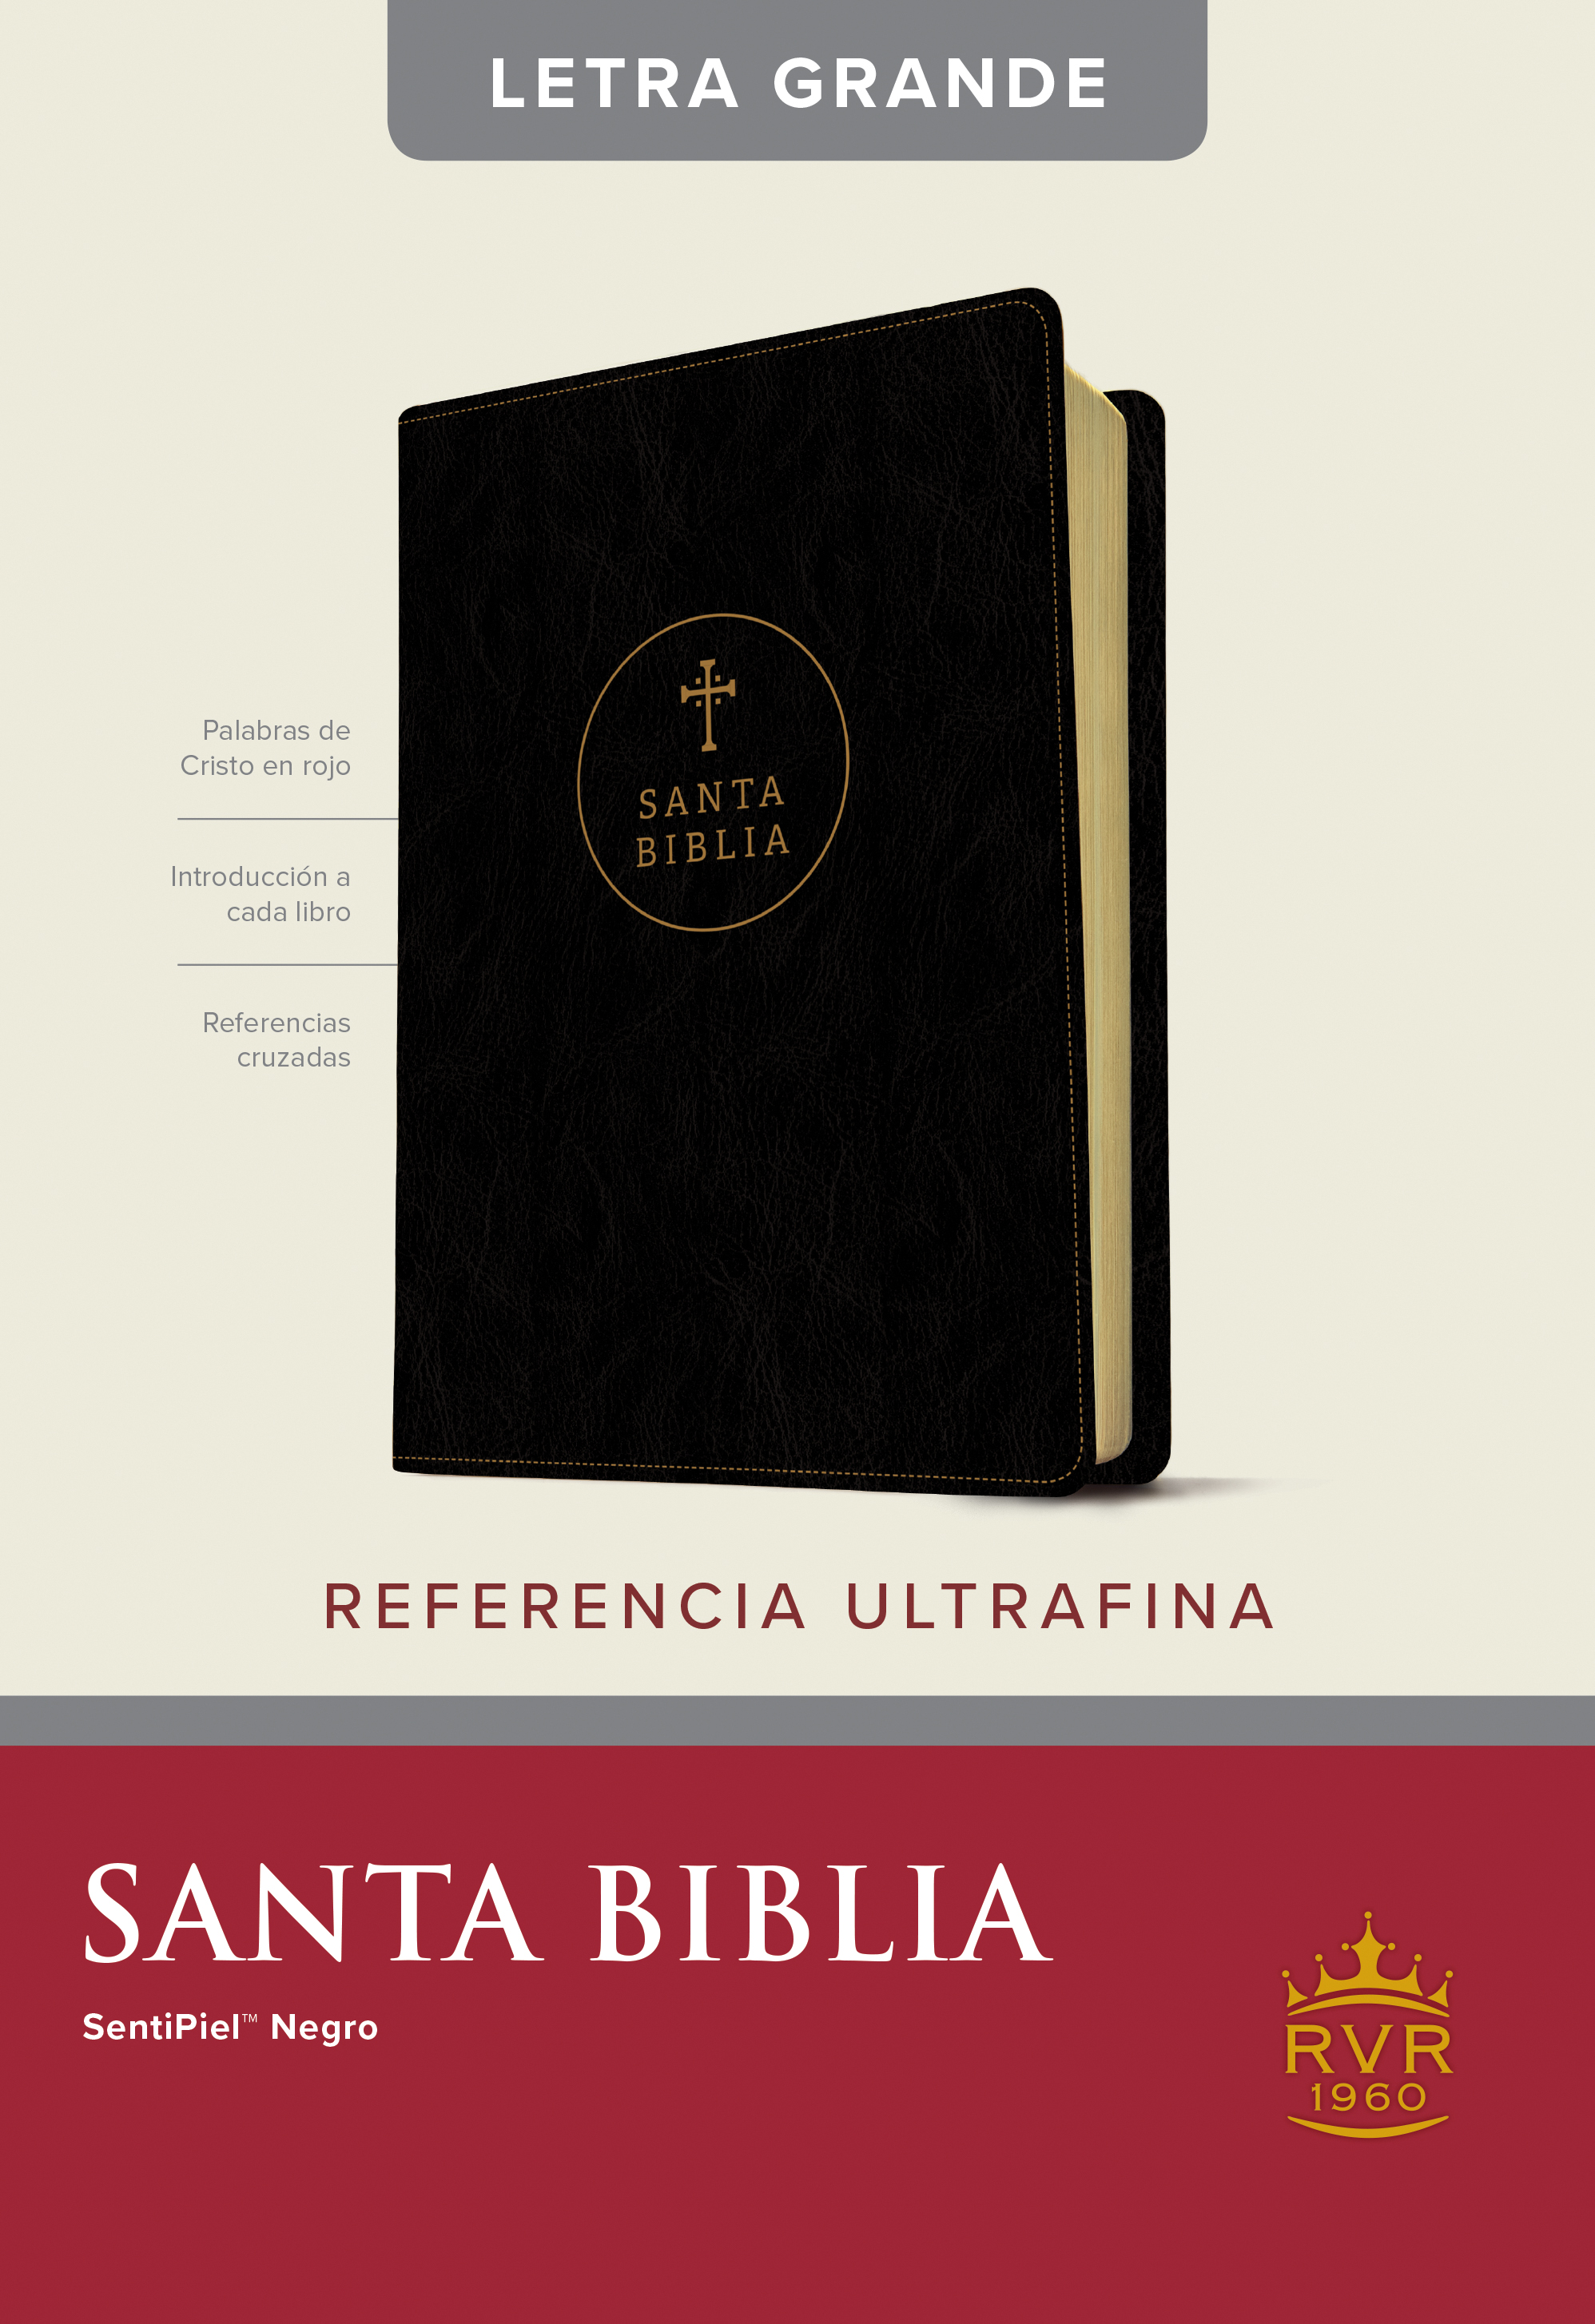 Biblia RVR 1960, Edici�n de referencia ultrafina, letra grande negro